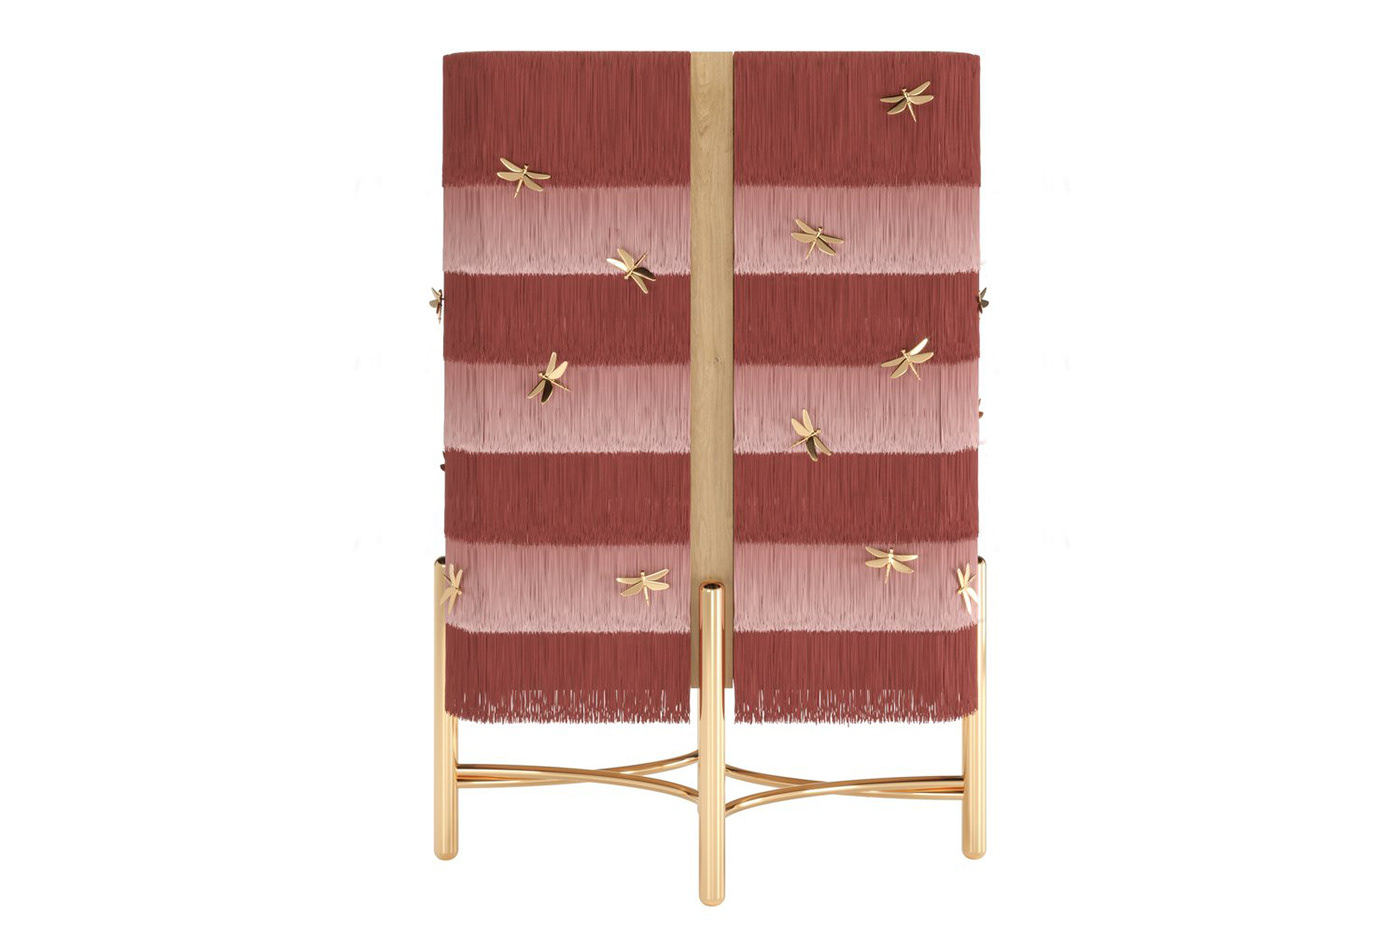 barcabinet cabinet design Fringe furniture furniture design  Interior interiordesign